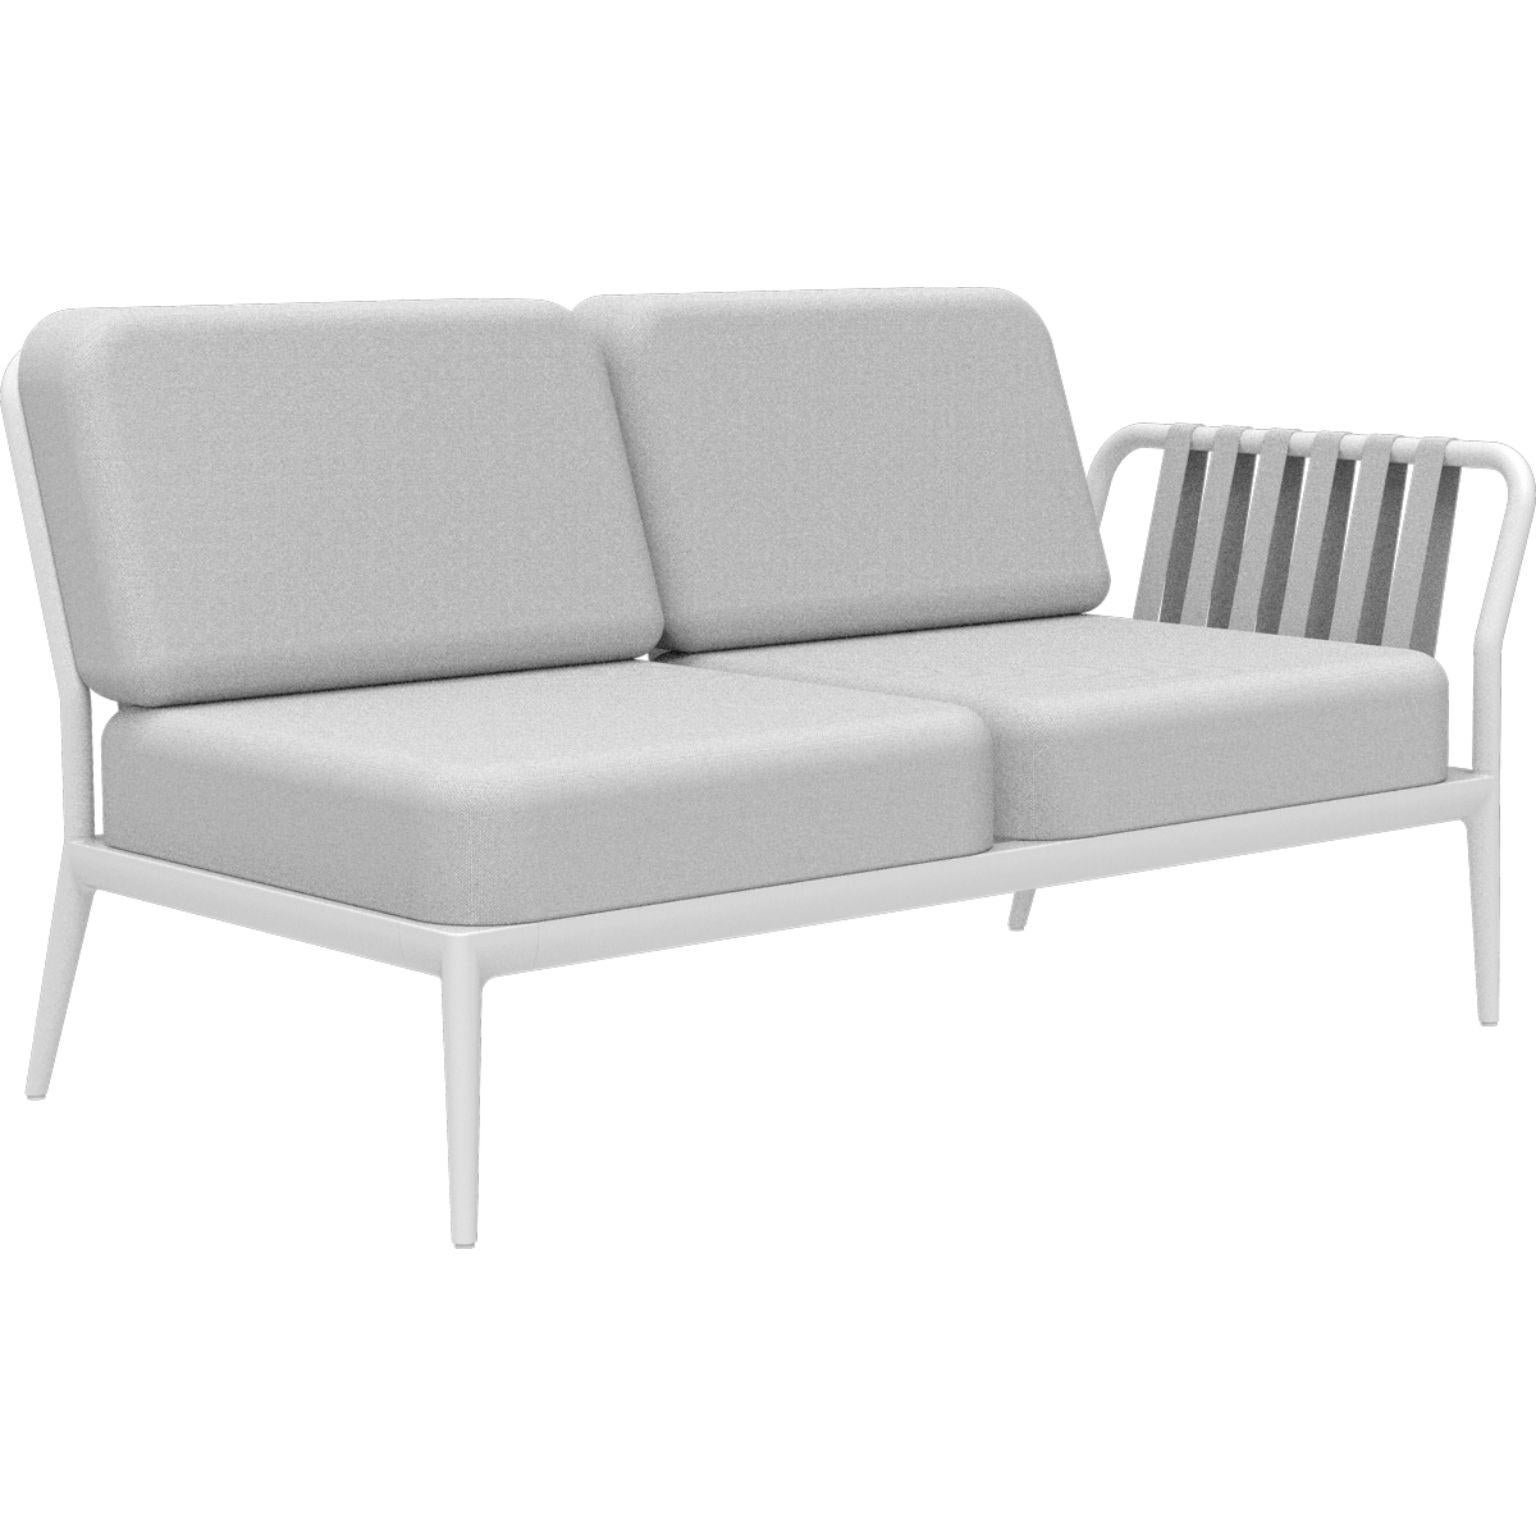 Ribbons Weißes modulares doppelsitziges sofa von MOWEE
Abmessungen: T83 x B148 x H81 cm (Sitzhöhe 42 cm).
MATERIAL: Aluminium und Polstermaterial.
Gewicht: 29 kg
Auch in verschiedenen Farben und Ausführungen erhältlich.

Eine Collection'S, die durch